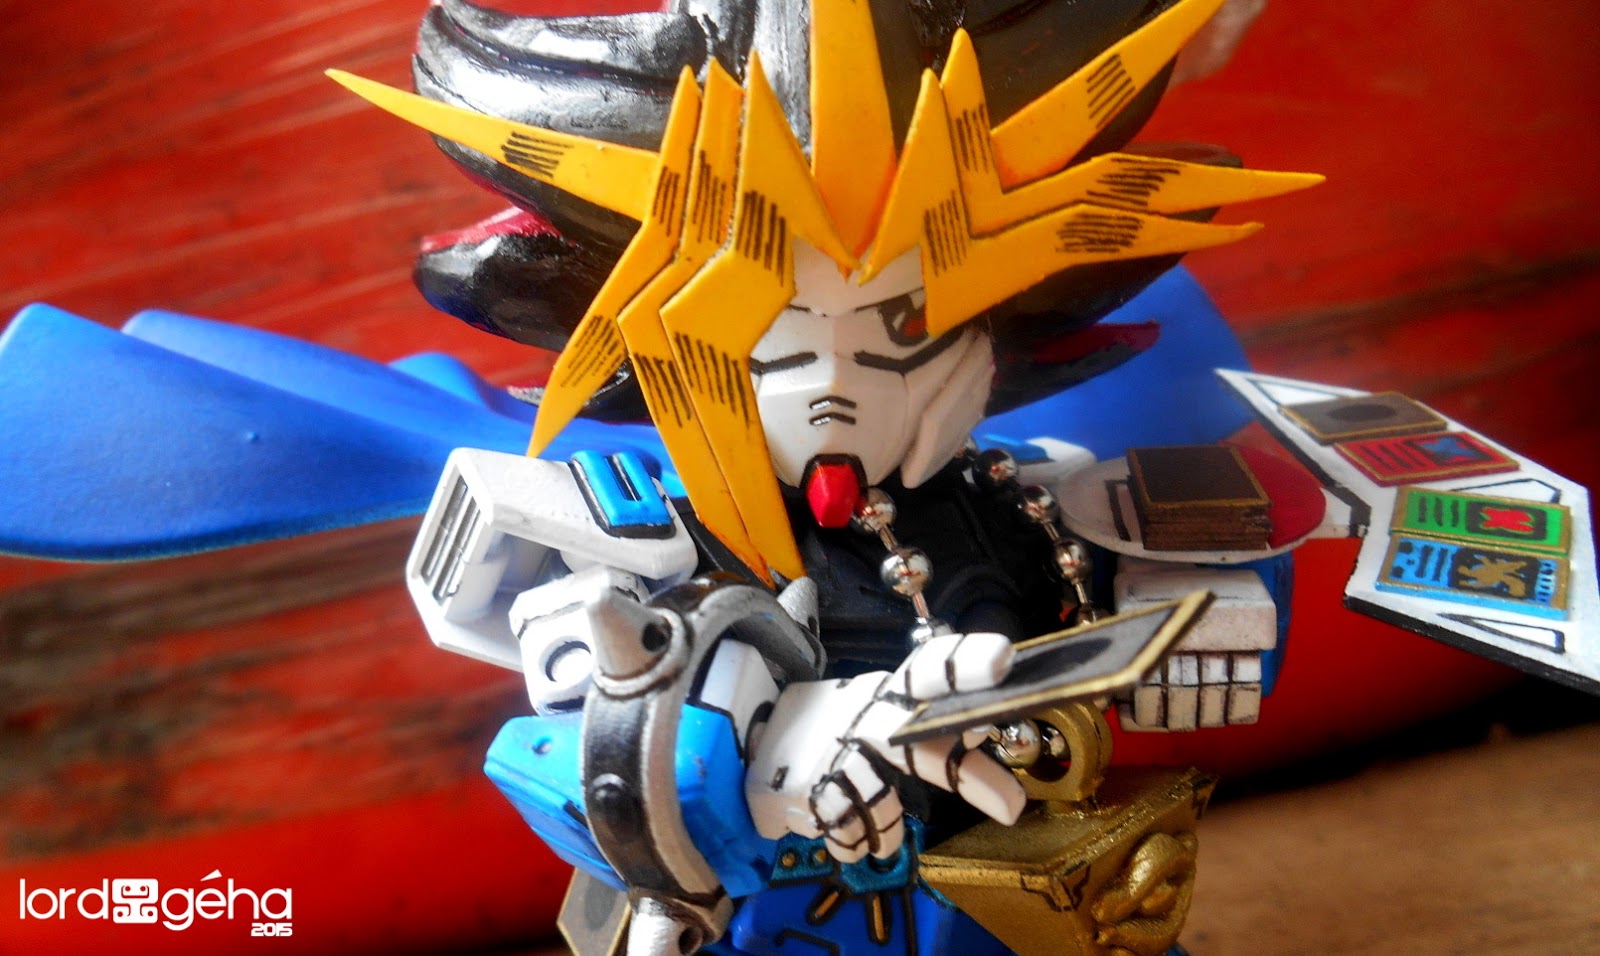 SD Gundam Custom - "King of Games" Yugi Gundam GeHa Lord : "